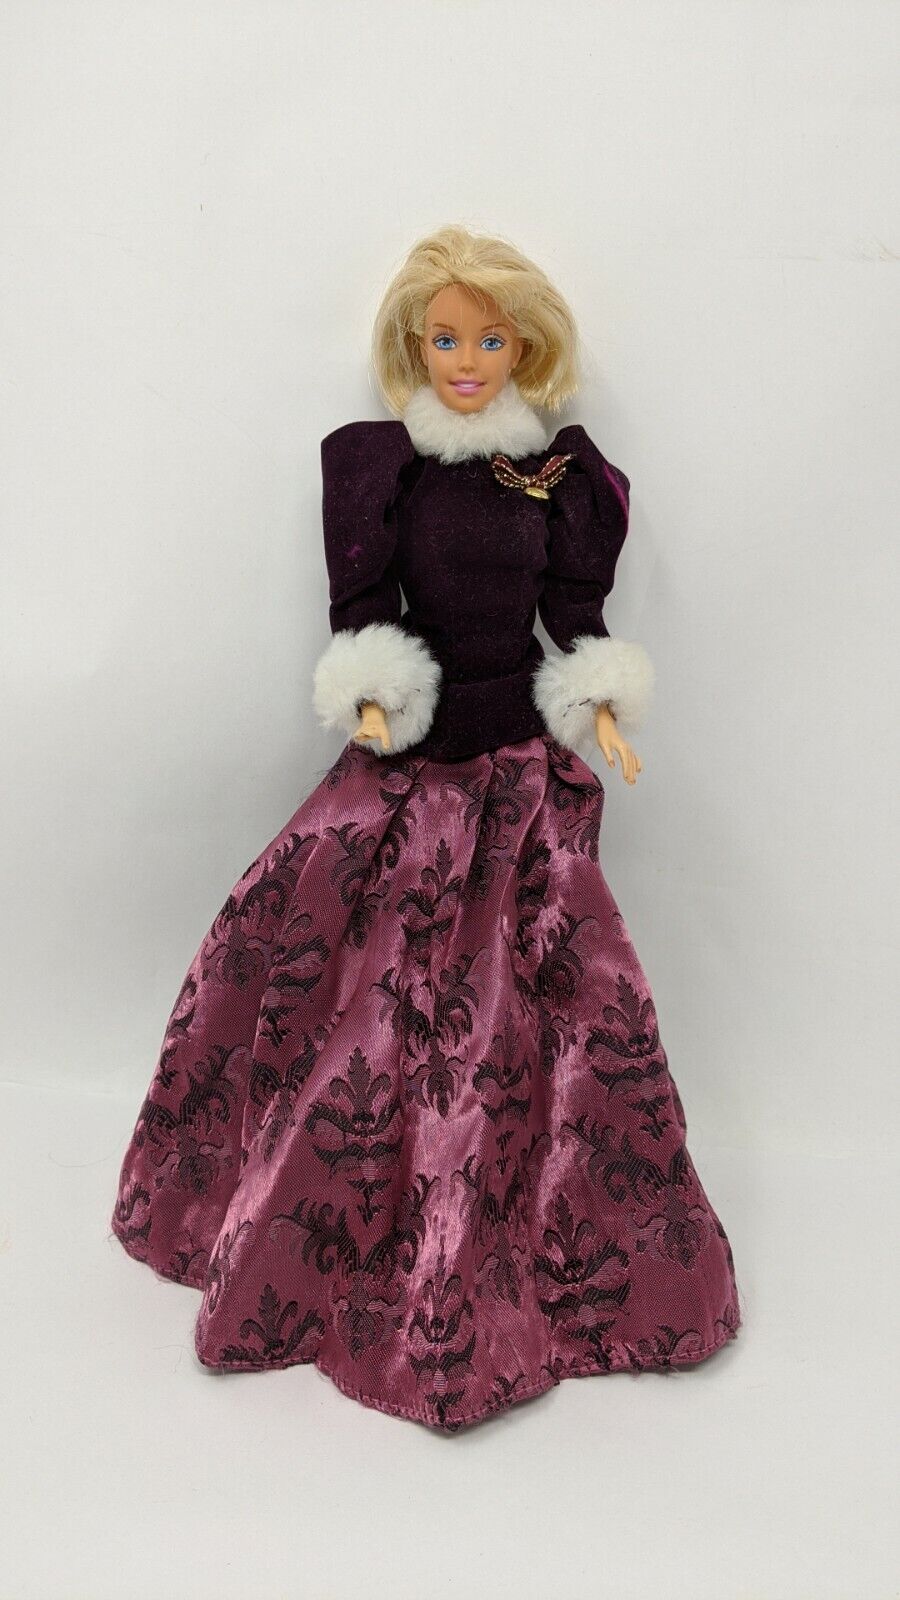 Vintage Blonde Barbie Doll Made in Japan Twist at Waist 1959-1972 Blue Eyes